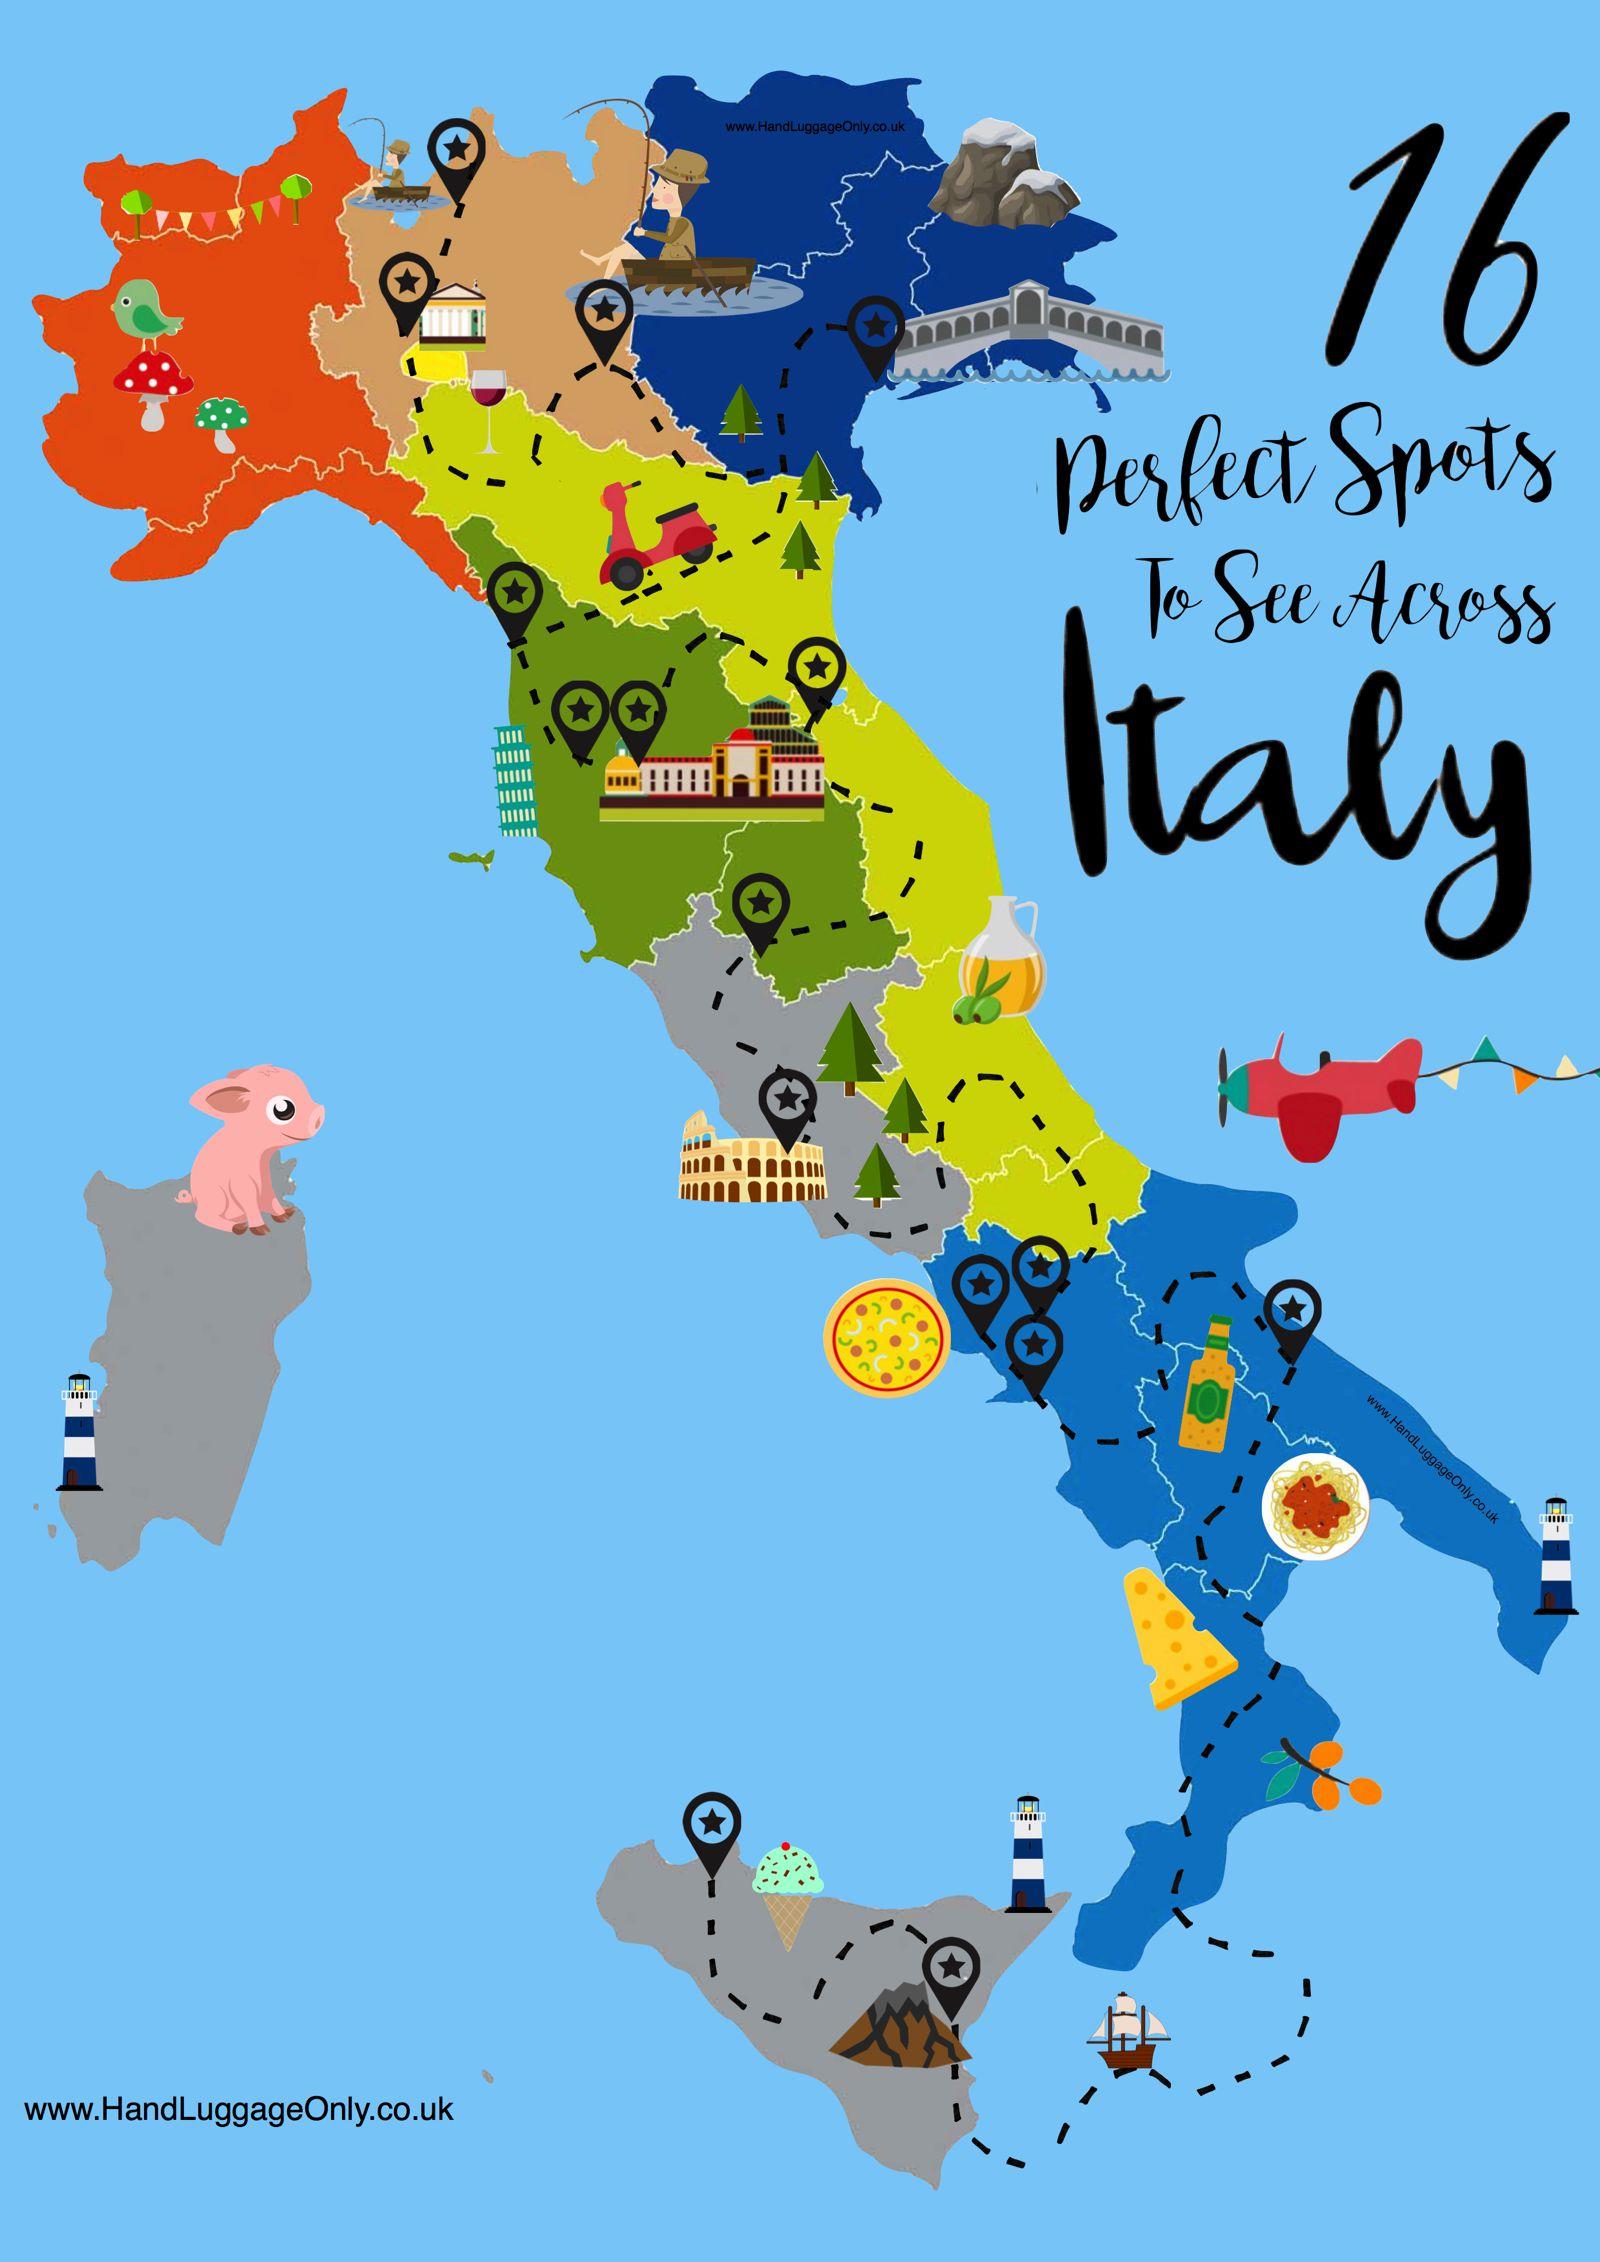 معظم السفلي خبز محمص  الخريطة السياحية لإيطاليا: مناطق الجذب السياحي والمعالم الأثرية في إيطاليا